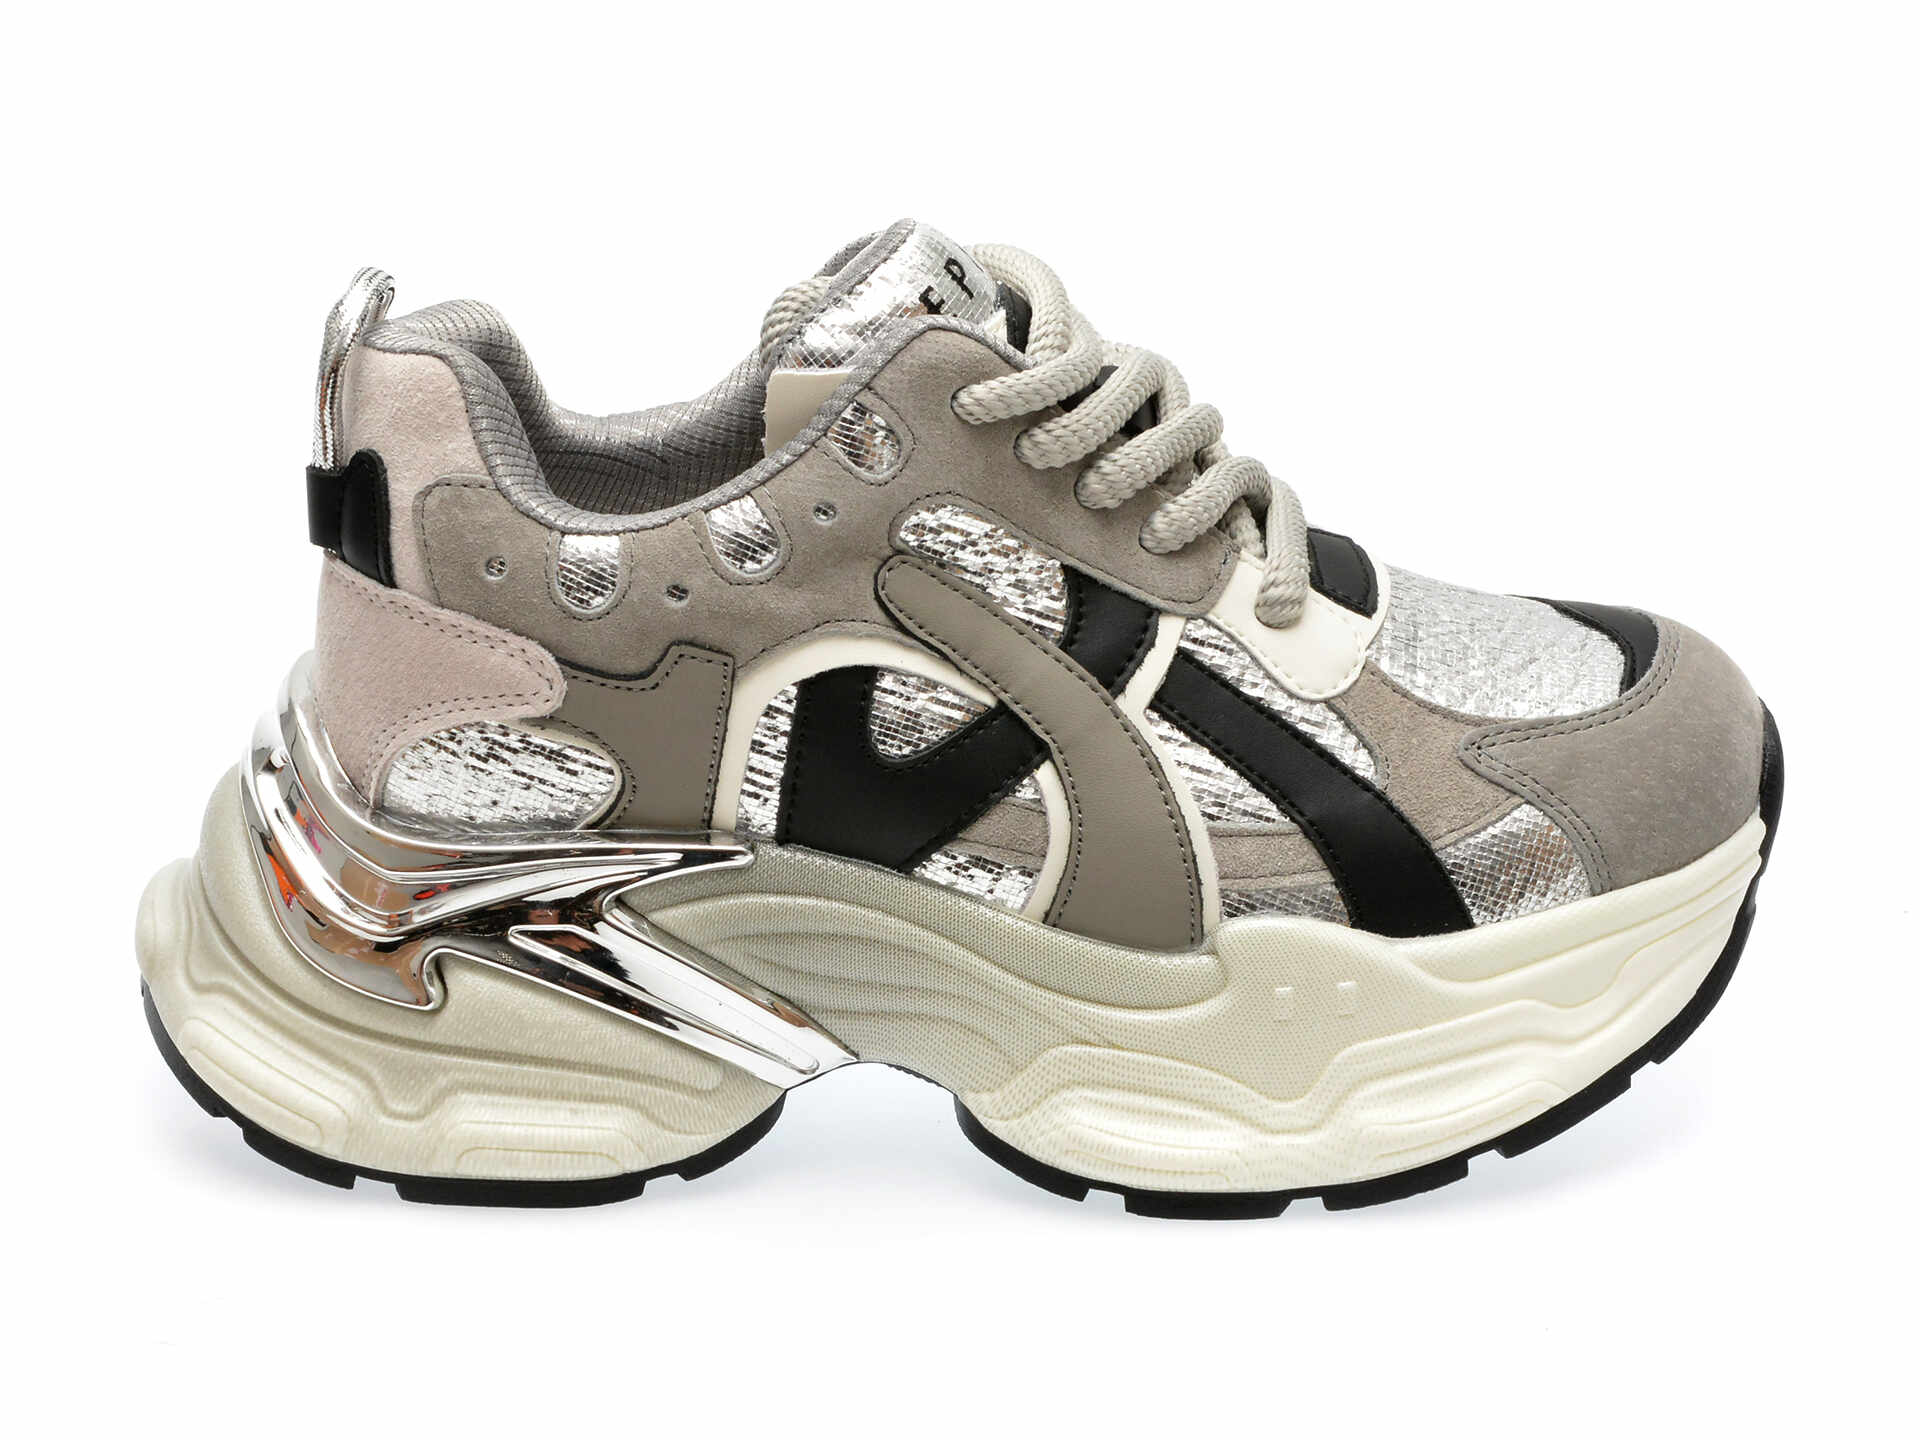 Pantofi sport EPICA argintii, 20262, din piele naturala